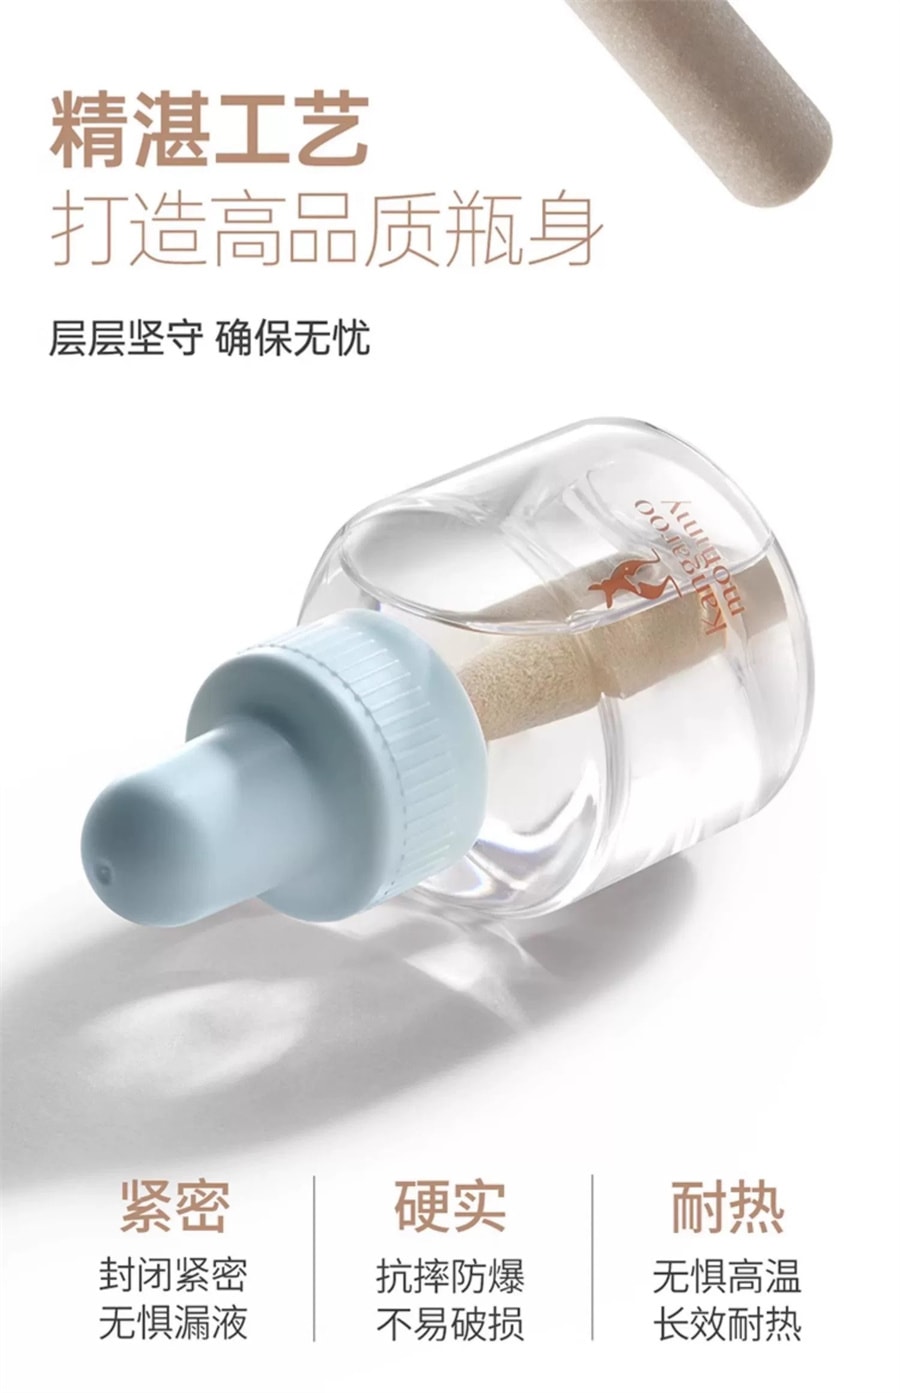 【中国直邮】袋鼠妈妈  电热蚊香液无味婴儿孕妇家用插电式驱蚊灭蚊水补充液套装  4液+1器